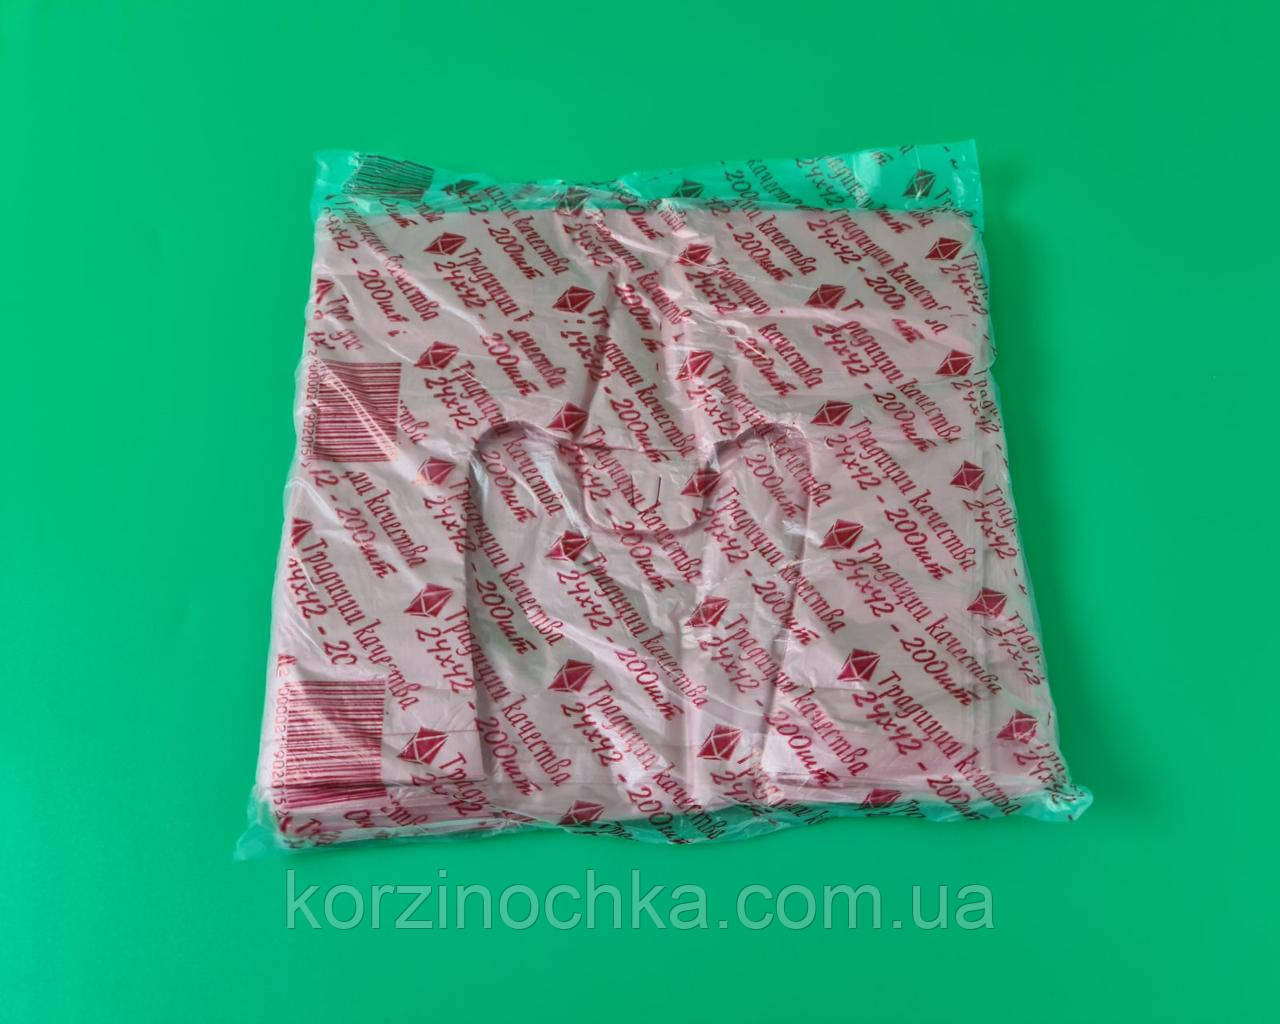 Фасувальні пакети Майка 24*42 Полька(200 шт)Поліетиленові пакувальні кульки